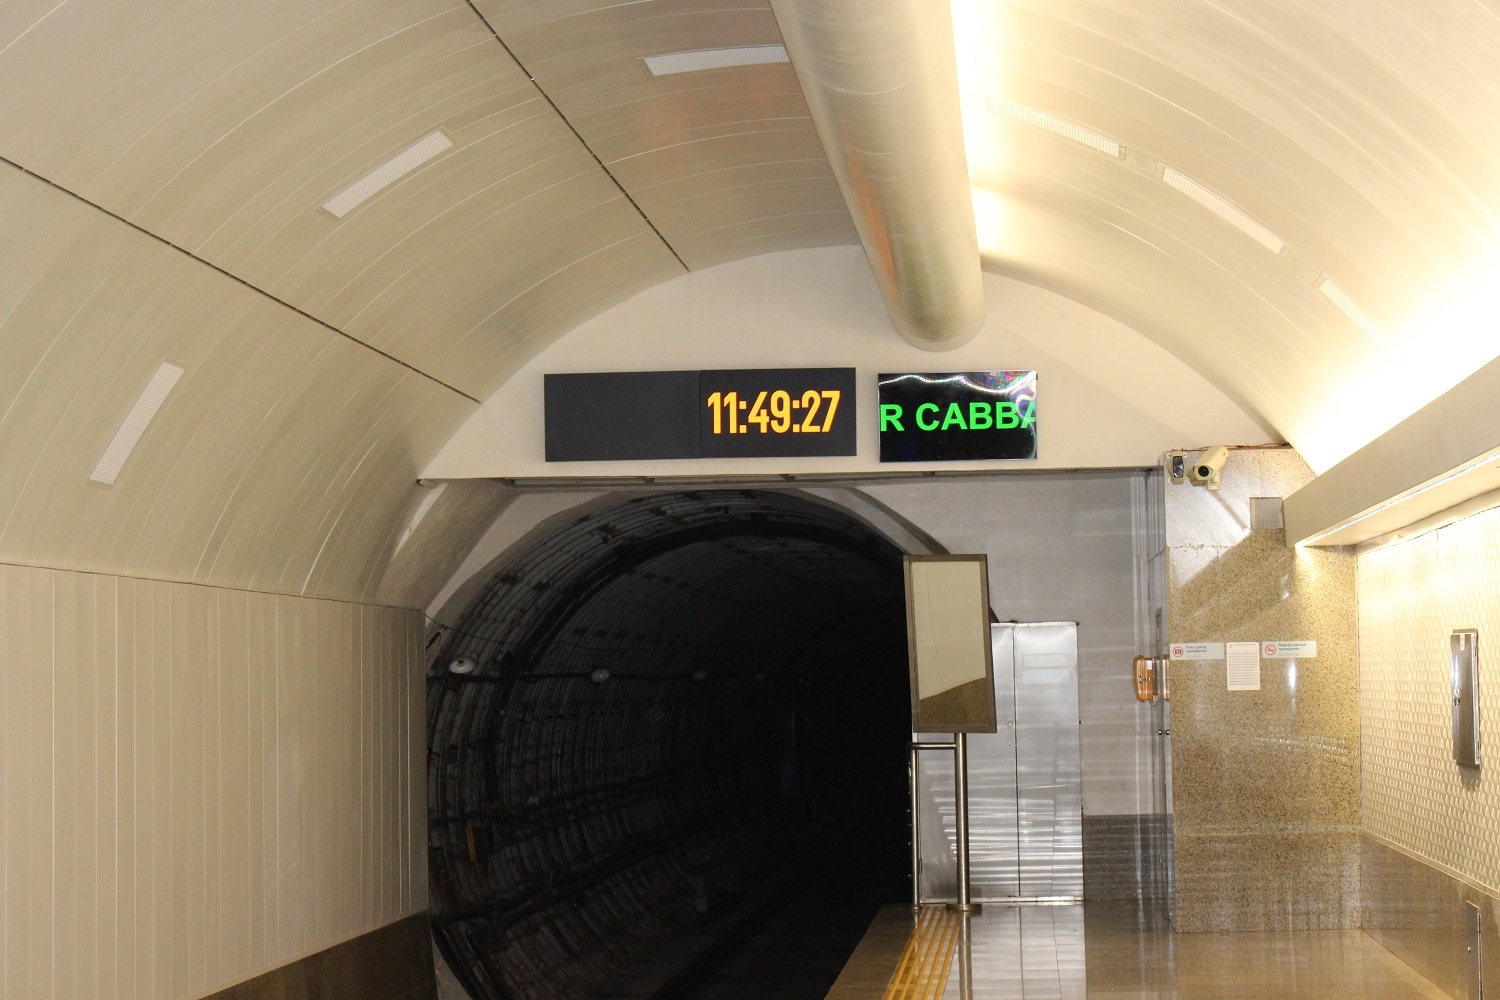 Bakı metrosunda sərnişin sıxlığının əsl səbəbi bilindi: Əsas problem burdadır - VİDEO